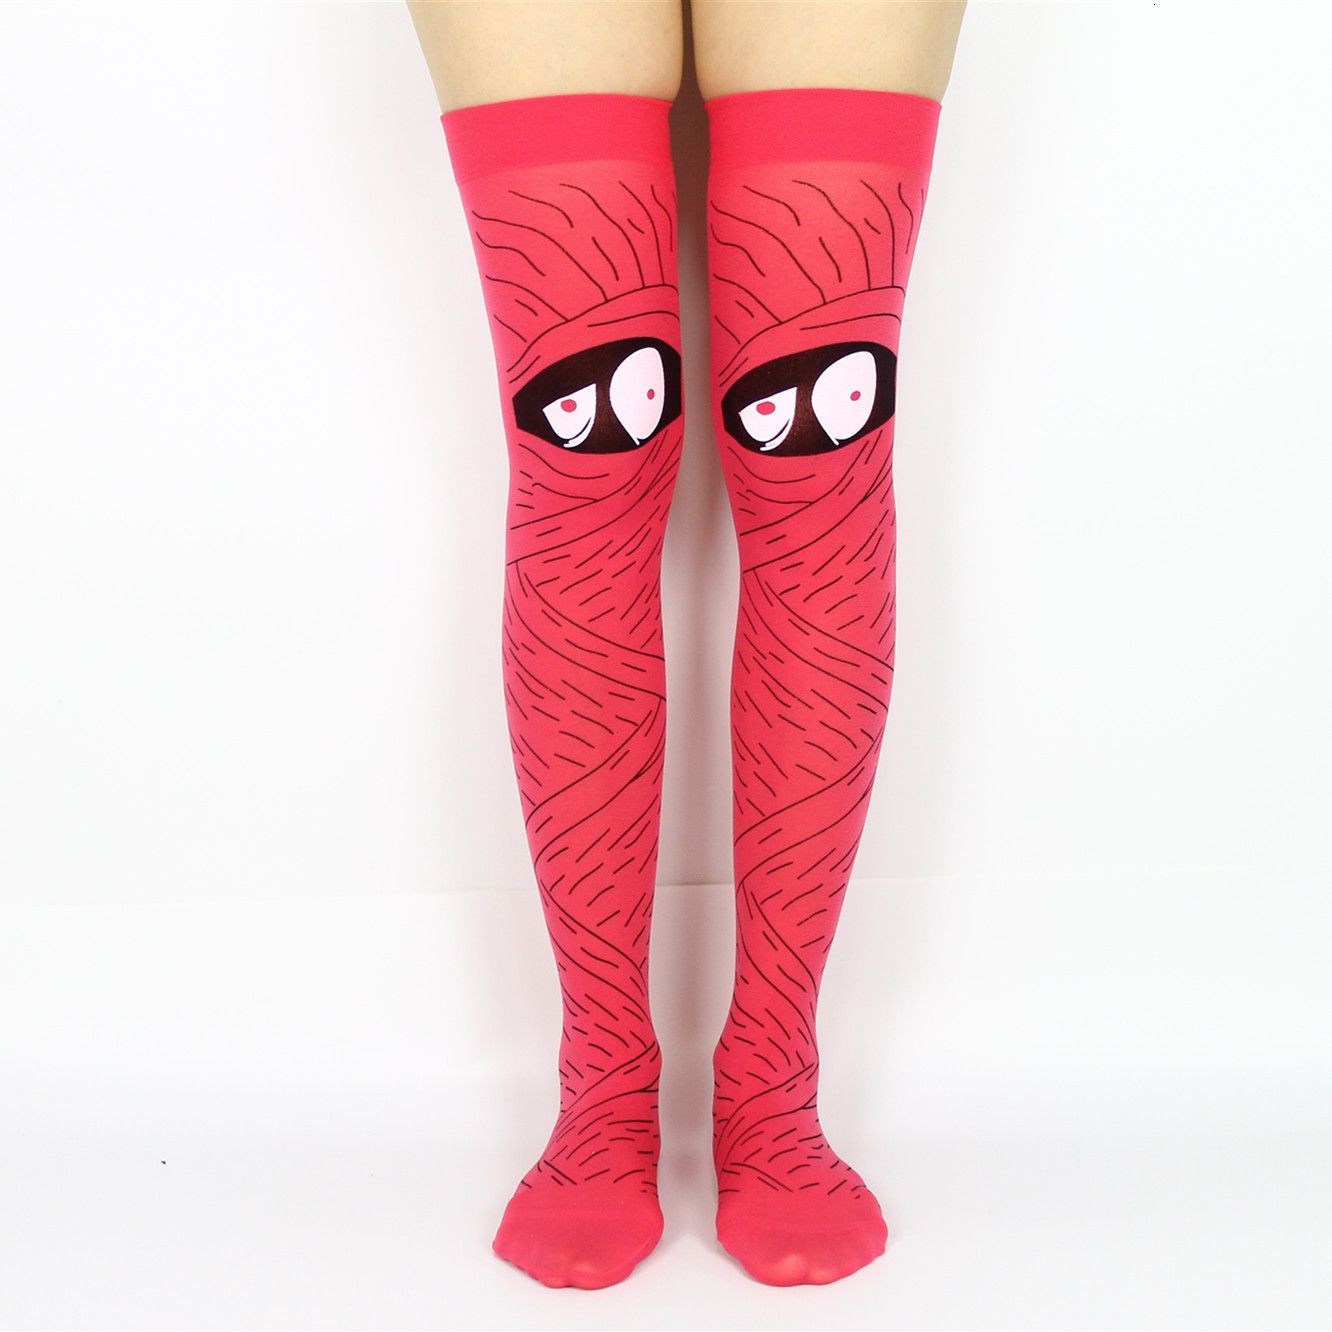 rode sokken - grote ogen